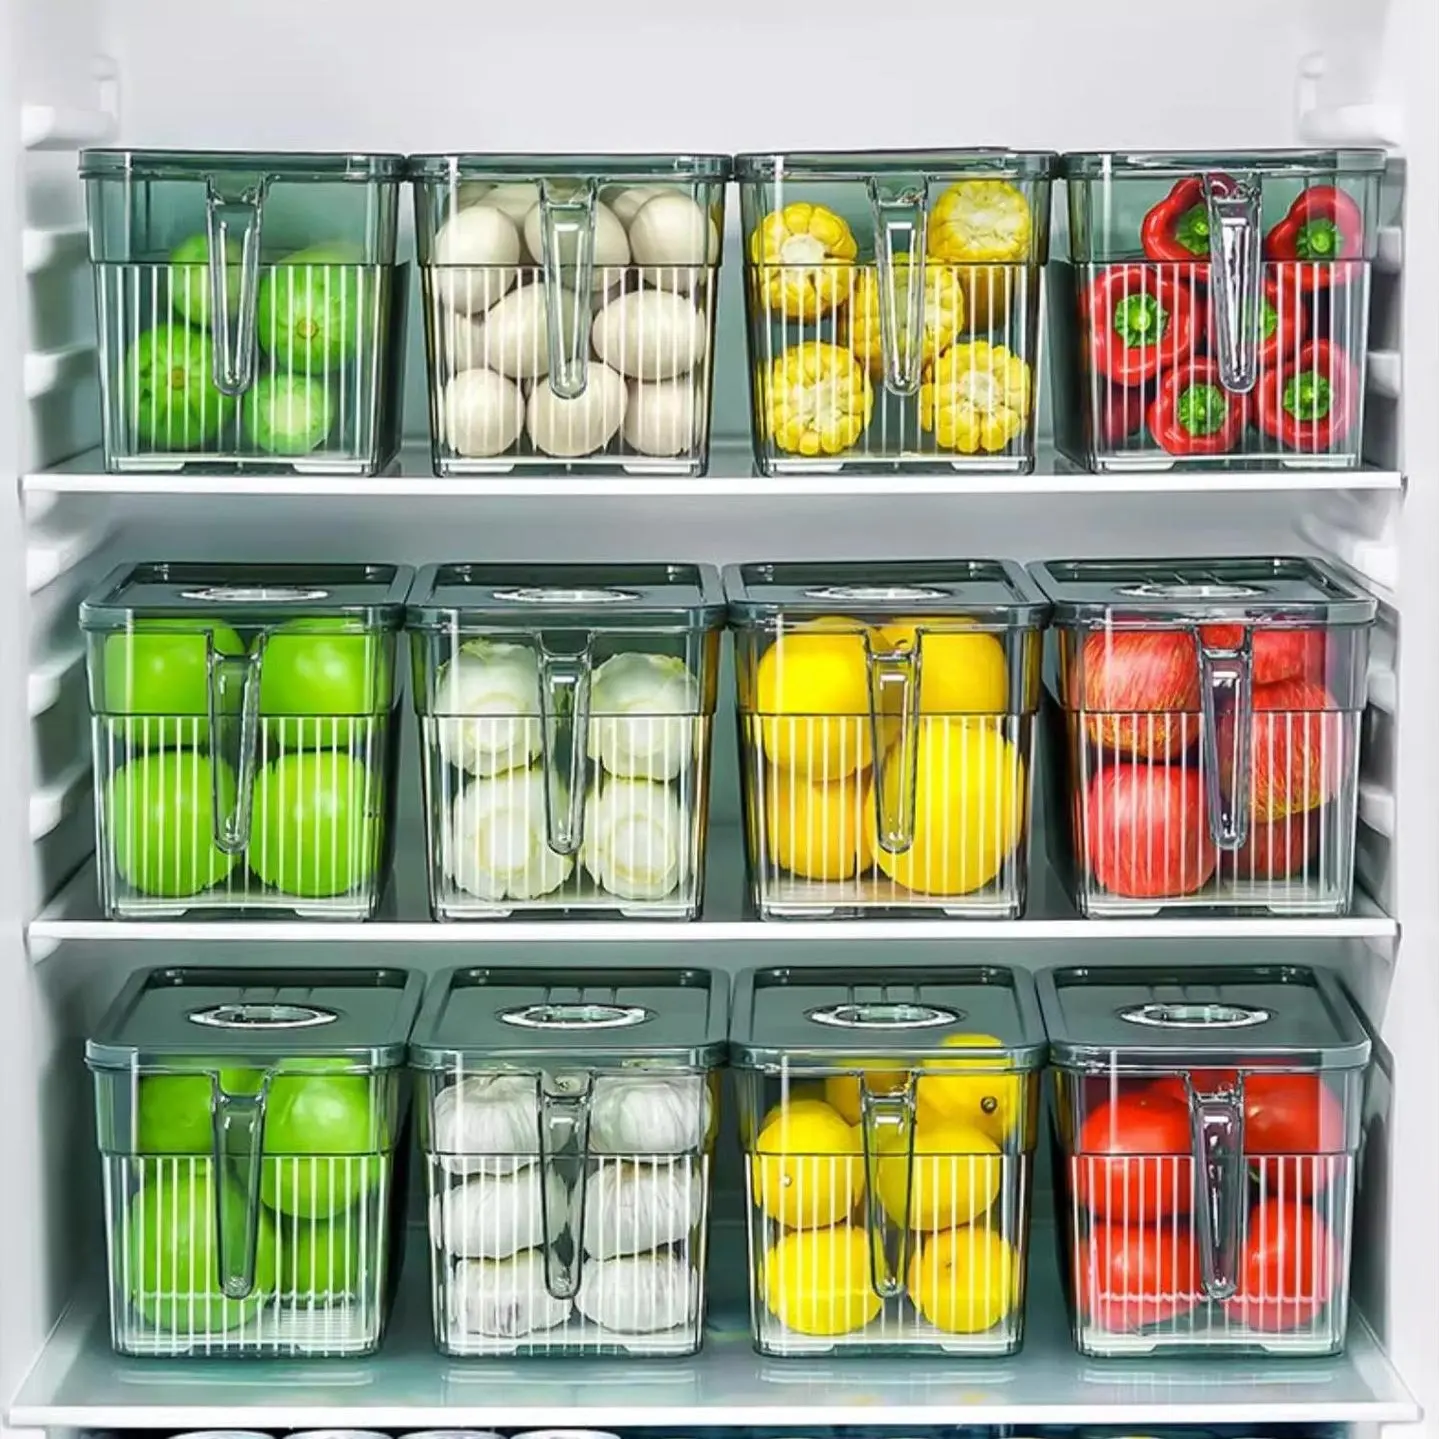 منظم ثلاجة المطبخ المنزلي صندوق تخزين بلاستيكي شفاف للخضروات والفاكهة مع مقبض